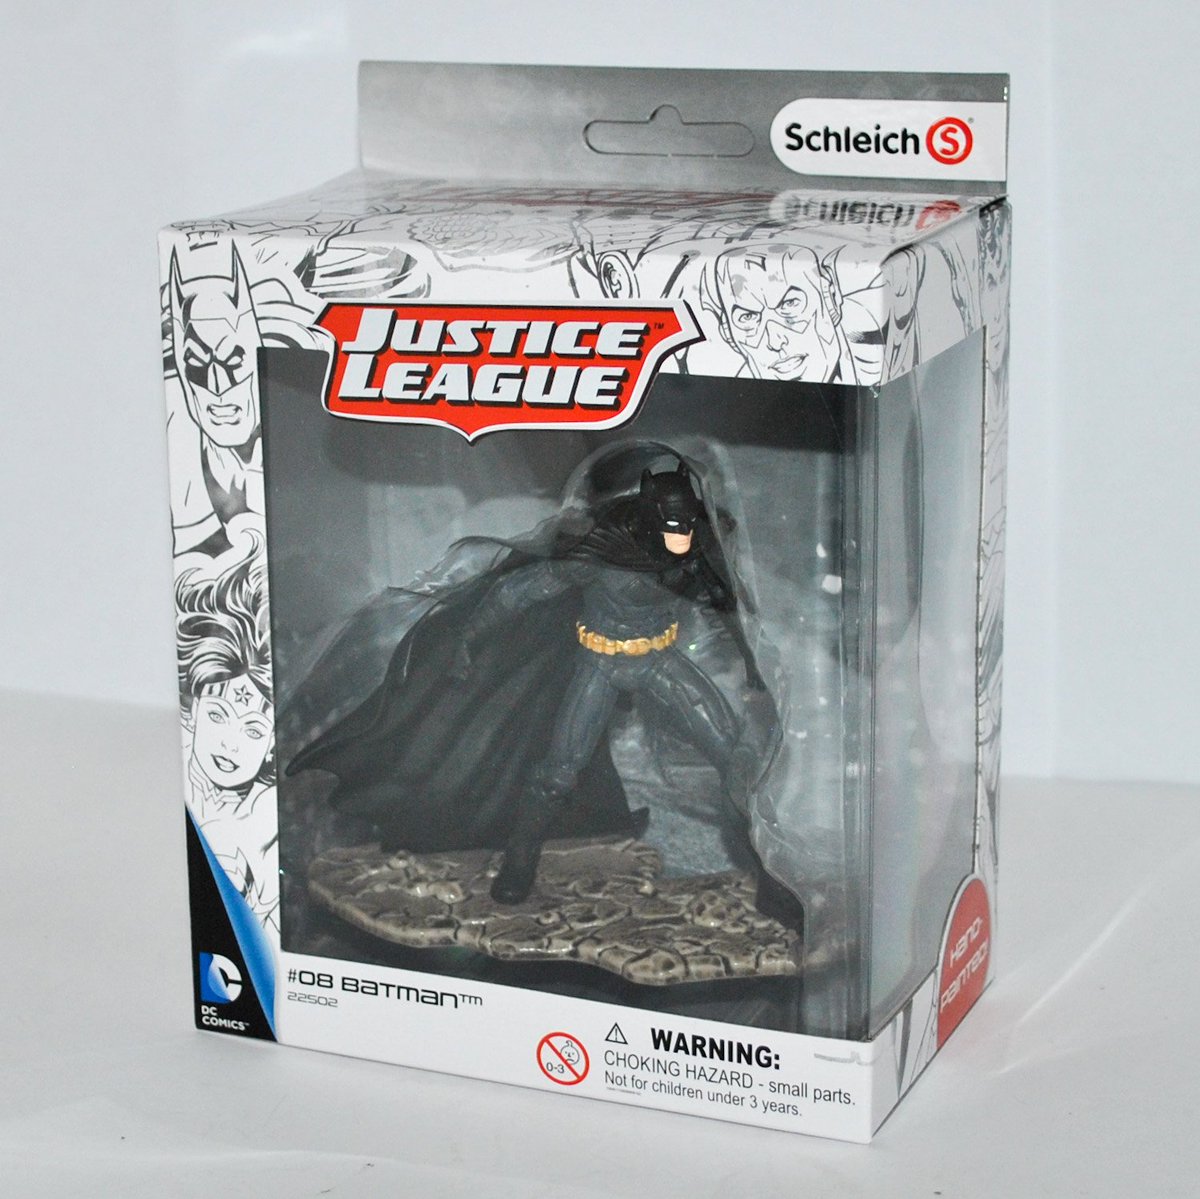 Schleich Justice League DC Comic Superhero Action Figure Batman Kneeling 22503 for sale online 